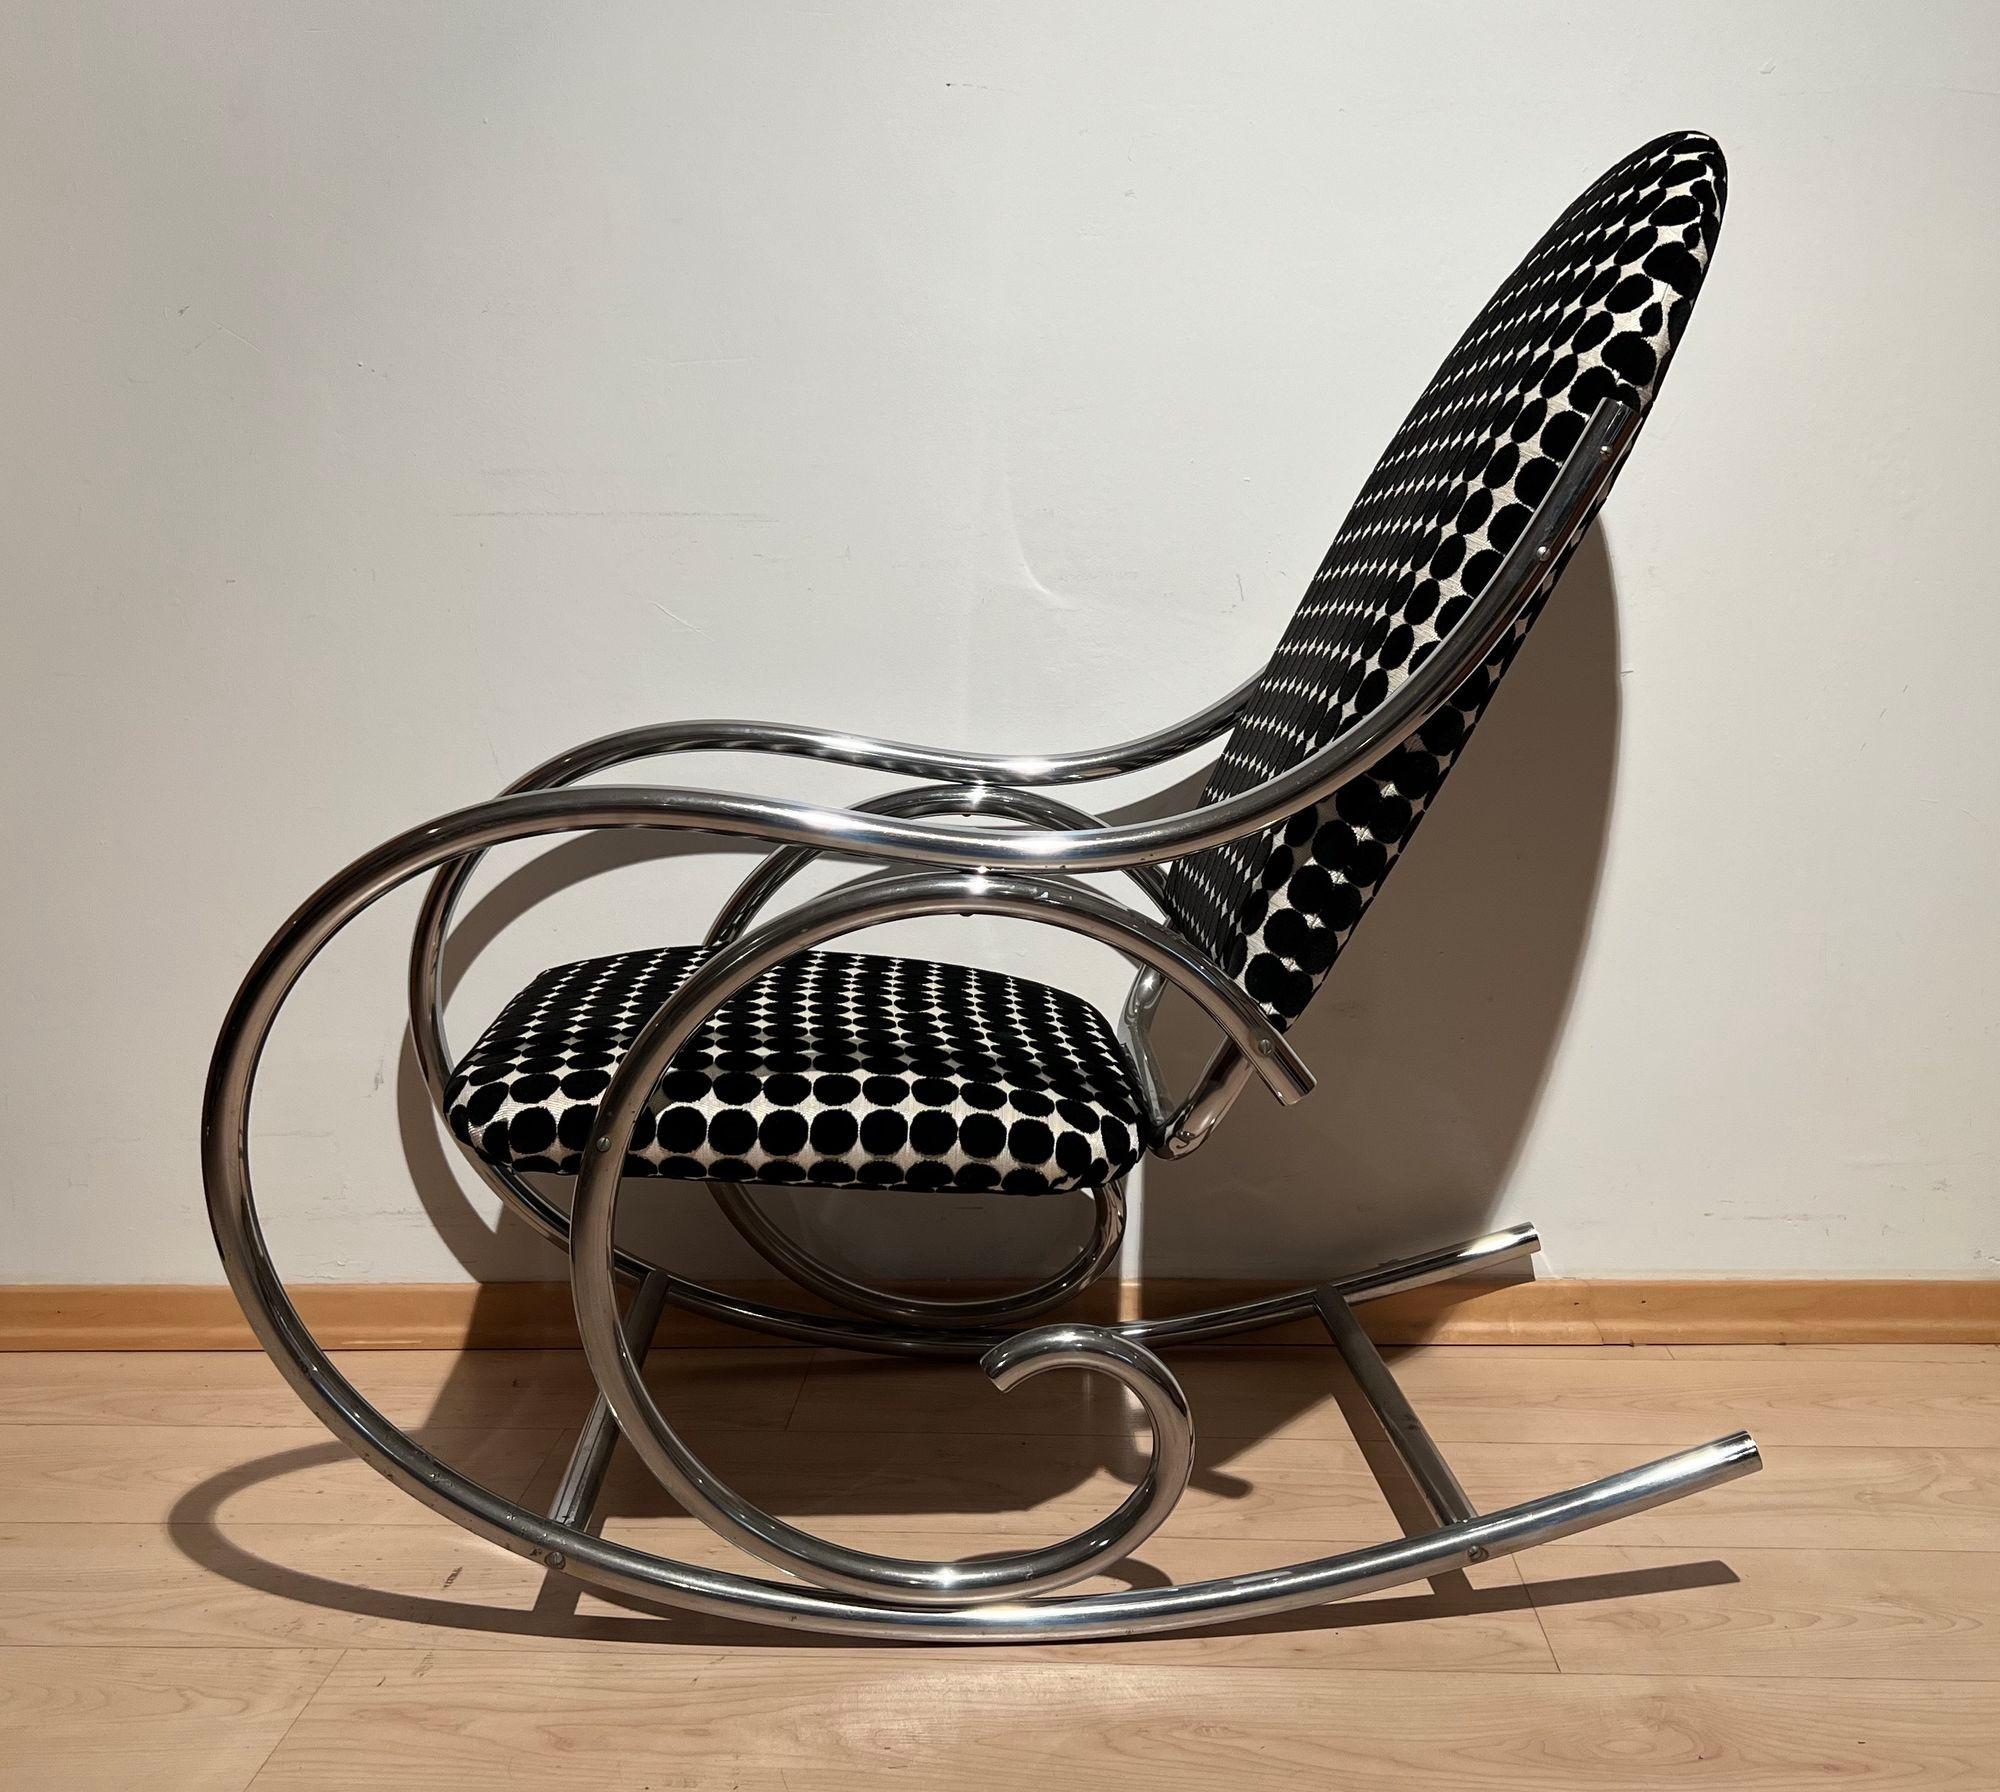 Original, rare fauteuil à bascule Bauhaus d'Allemagne circa 1920/30s.
Tubes d'acier épais cintrés chromés avec galvanisation d'origine, bien réservés et polis. L'assise et le dossier sont recouverts d'un tissu à pois noirs et blancs de la marque